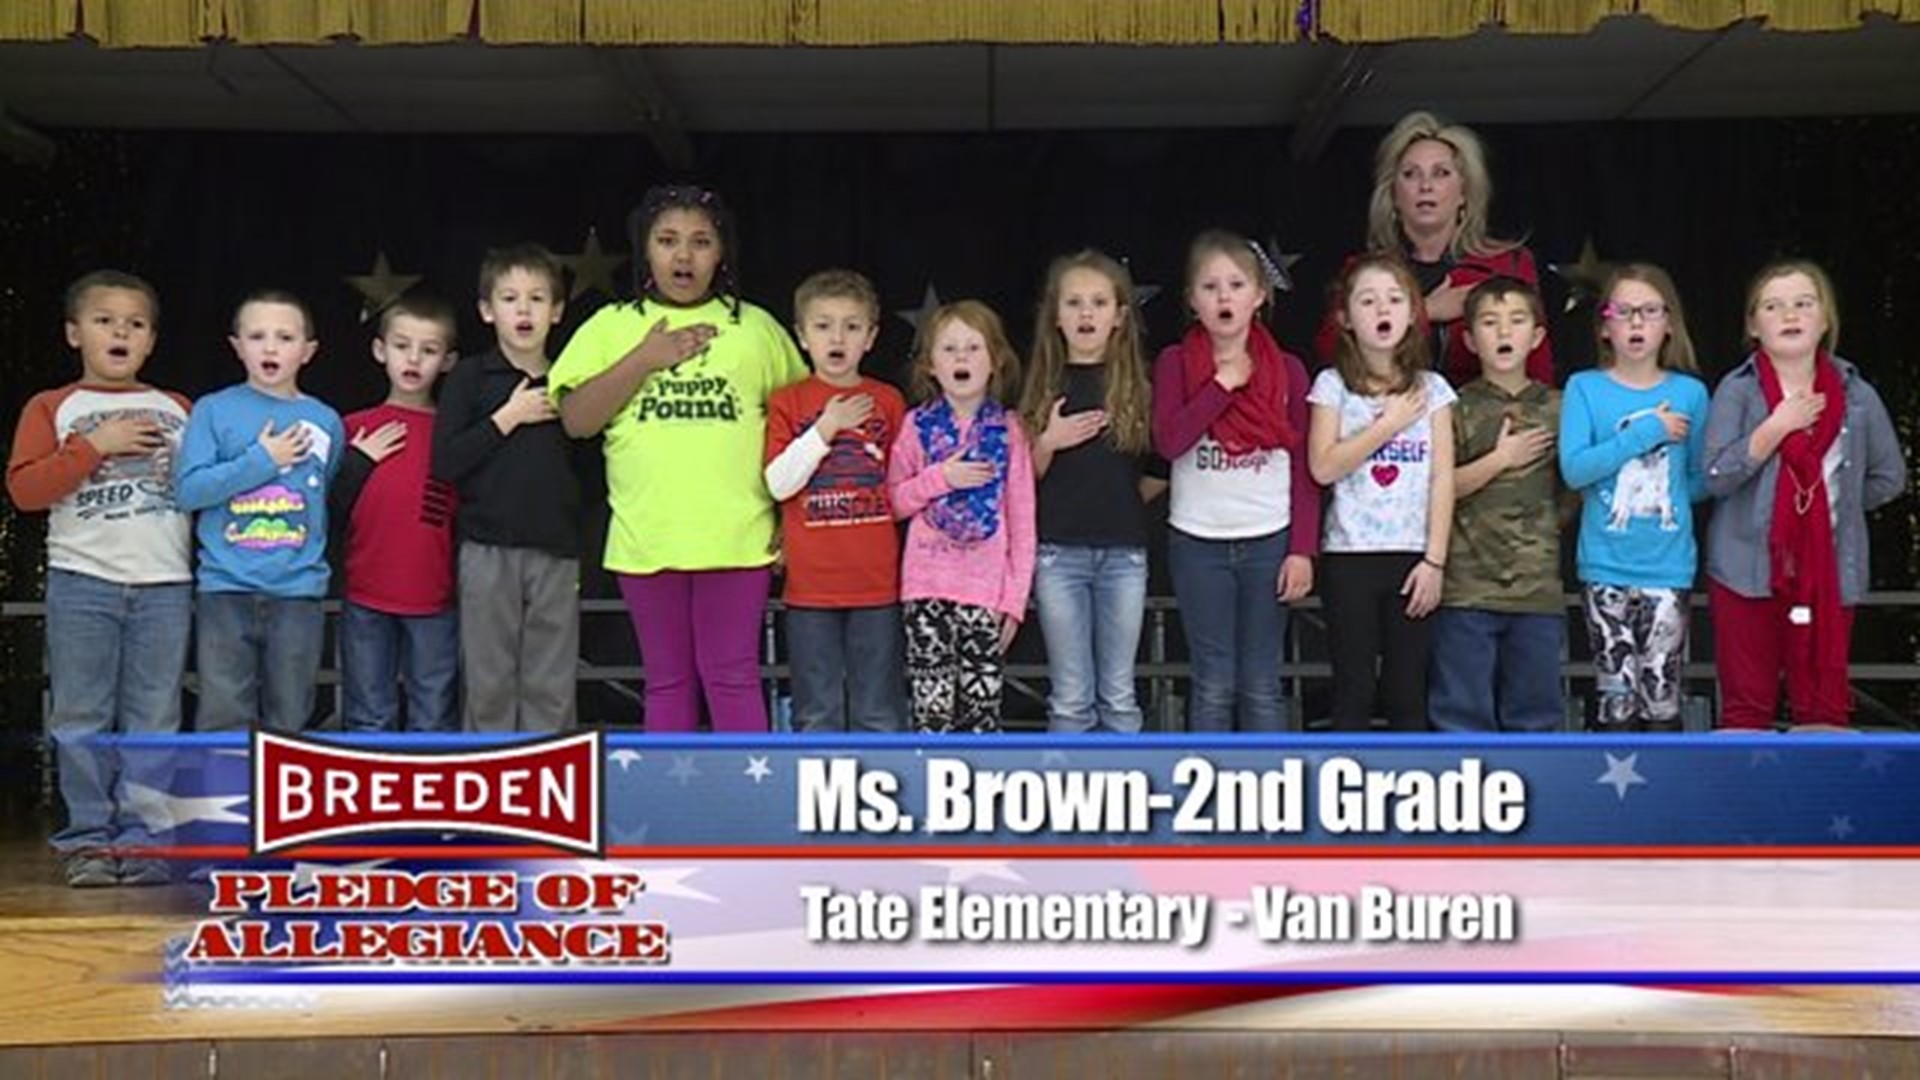 Tate Elementary - Van Buren, Ms. Brown - Second Grade